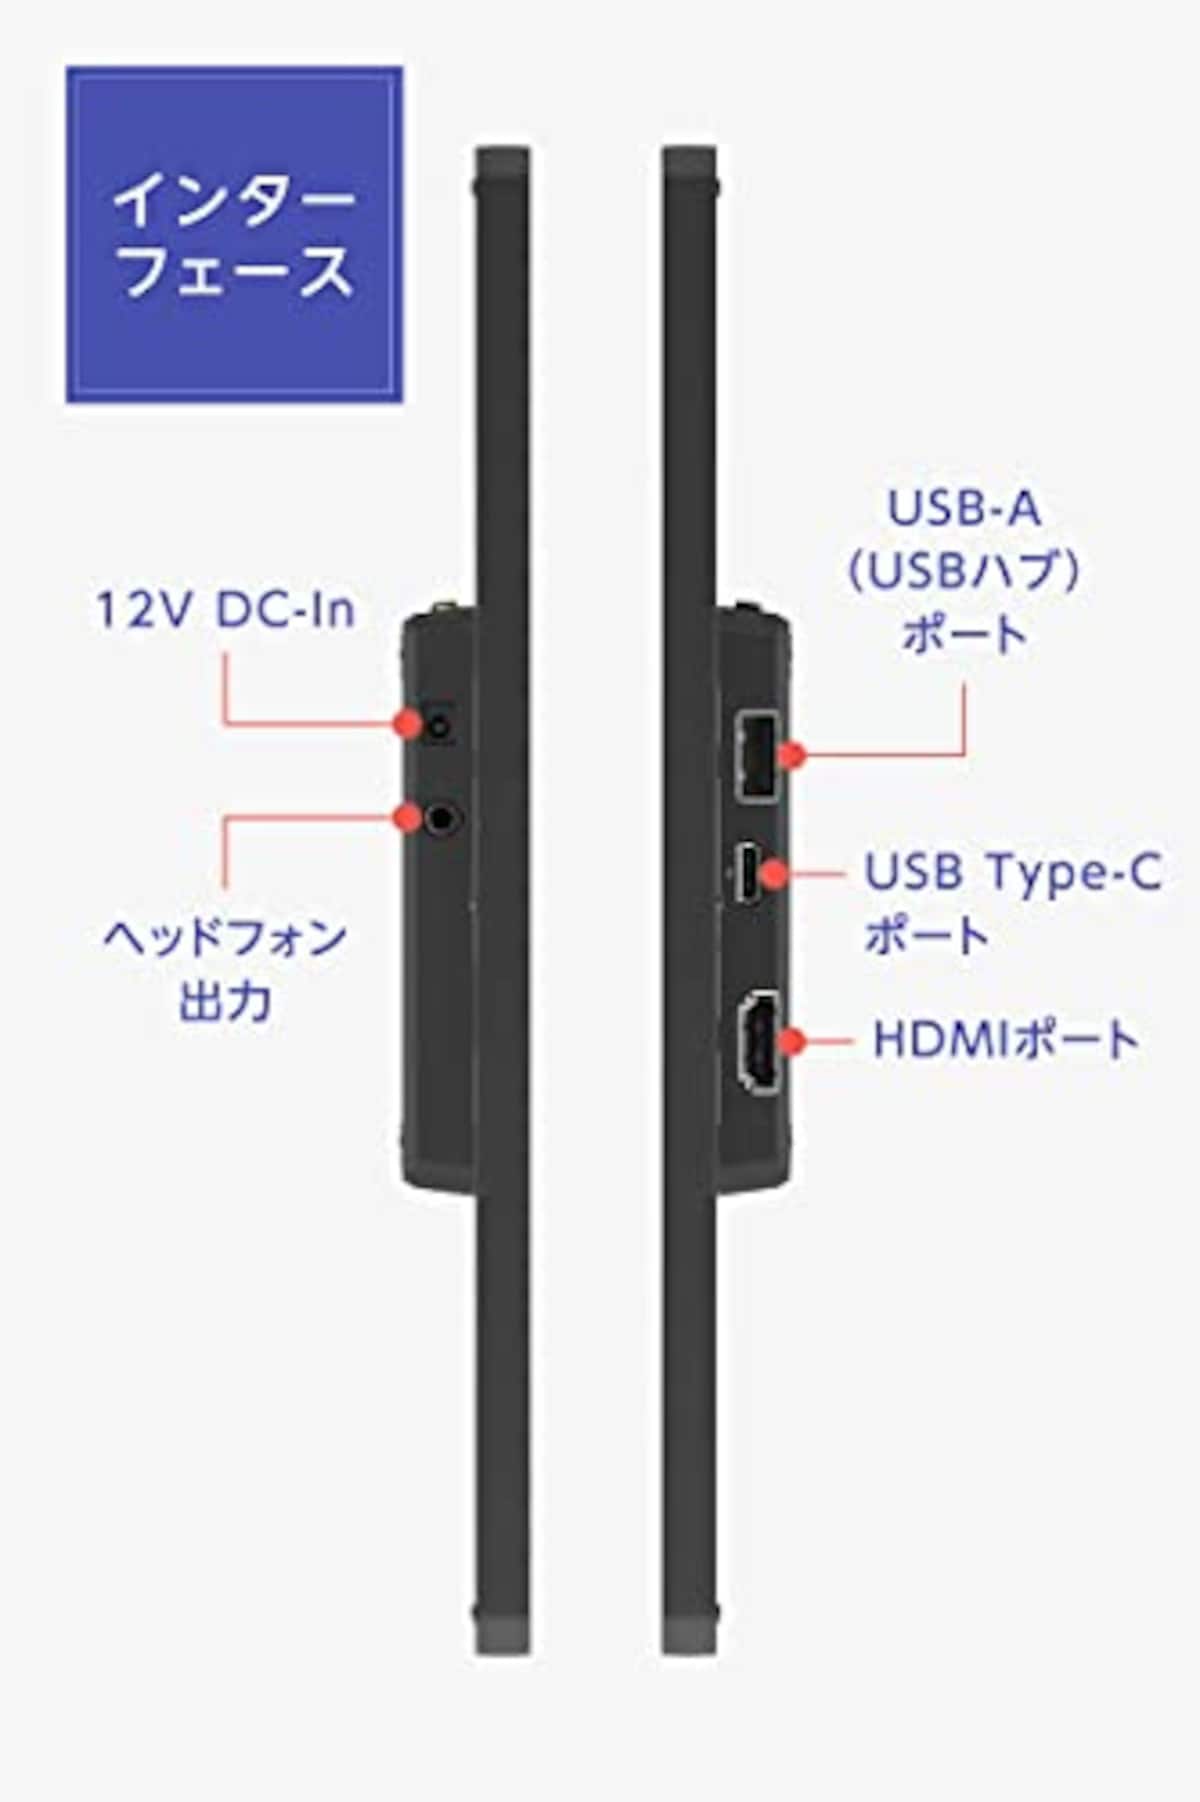  GeChic Corporation モバイルモニター タッチパネル搭載 15.6インチ GeChic On-Lap T151A FHD 1920x1080 IPS 10指タッチ 静電容量方式 HDMI USB Type-C USBハブ 表面硬度7H VESA75画像5 